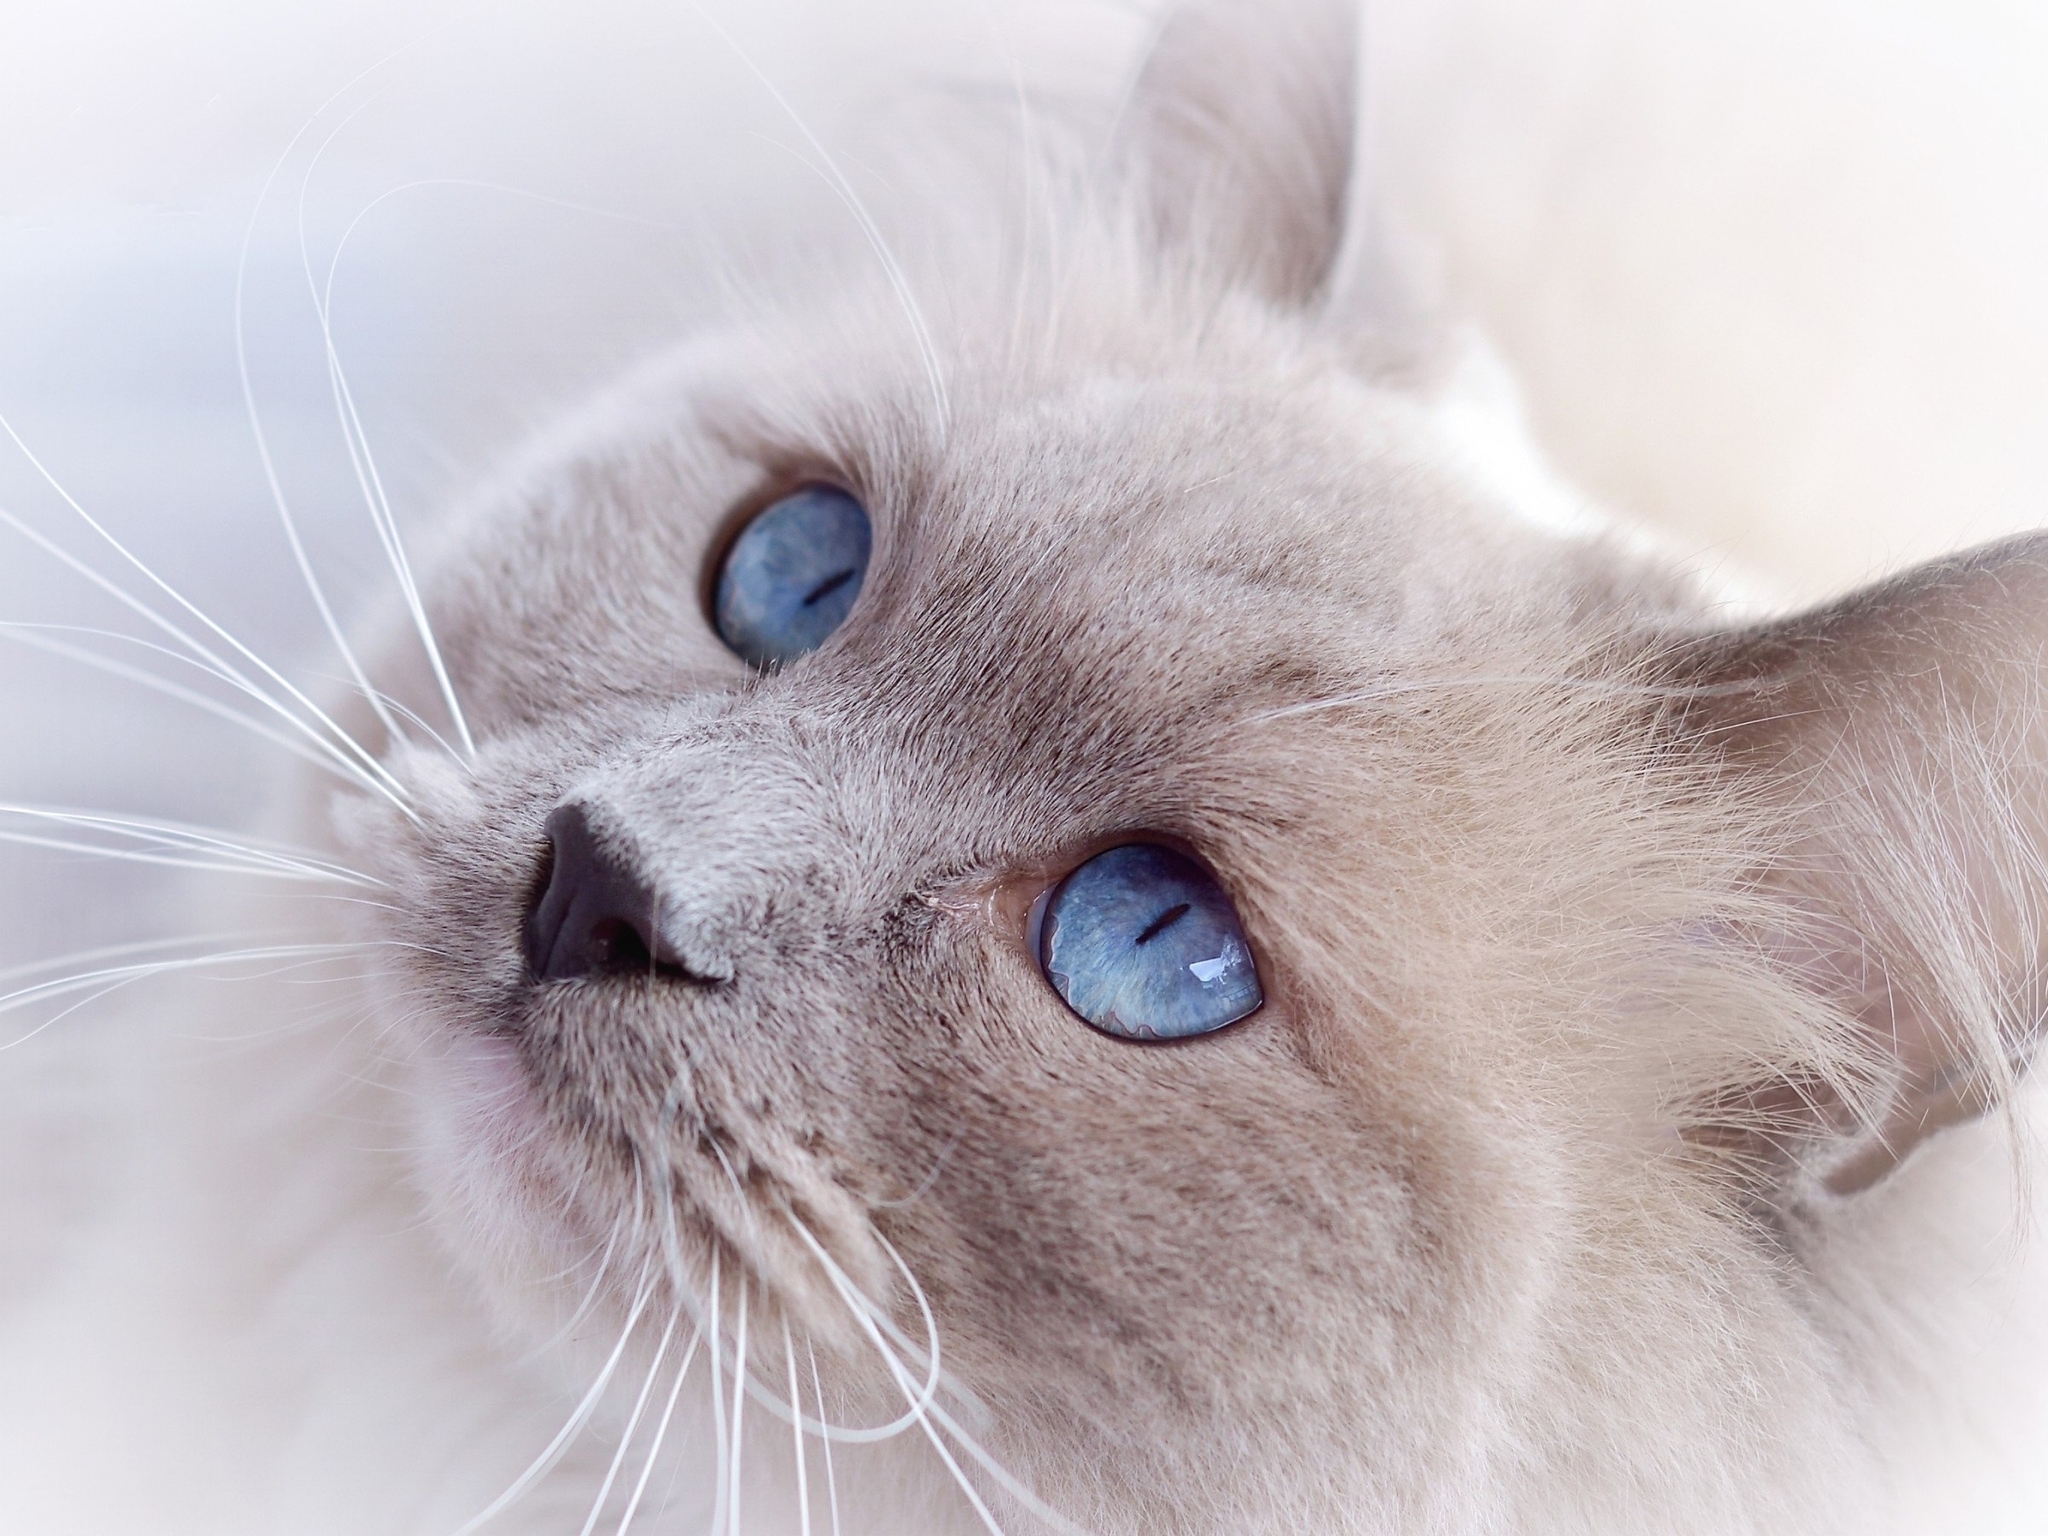 Image: Cat, muzzle, ears, coat, eyes, blue-eyed, looks